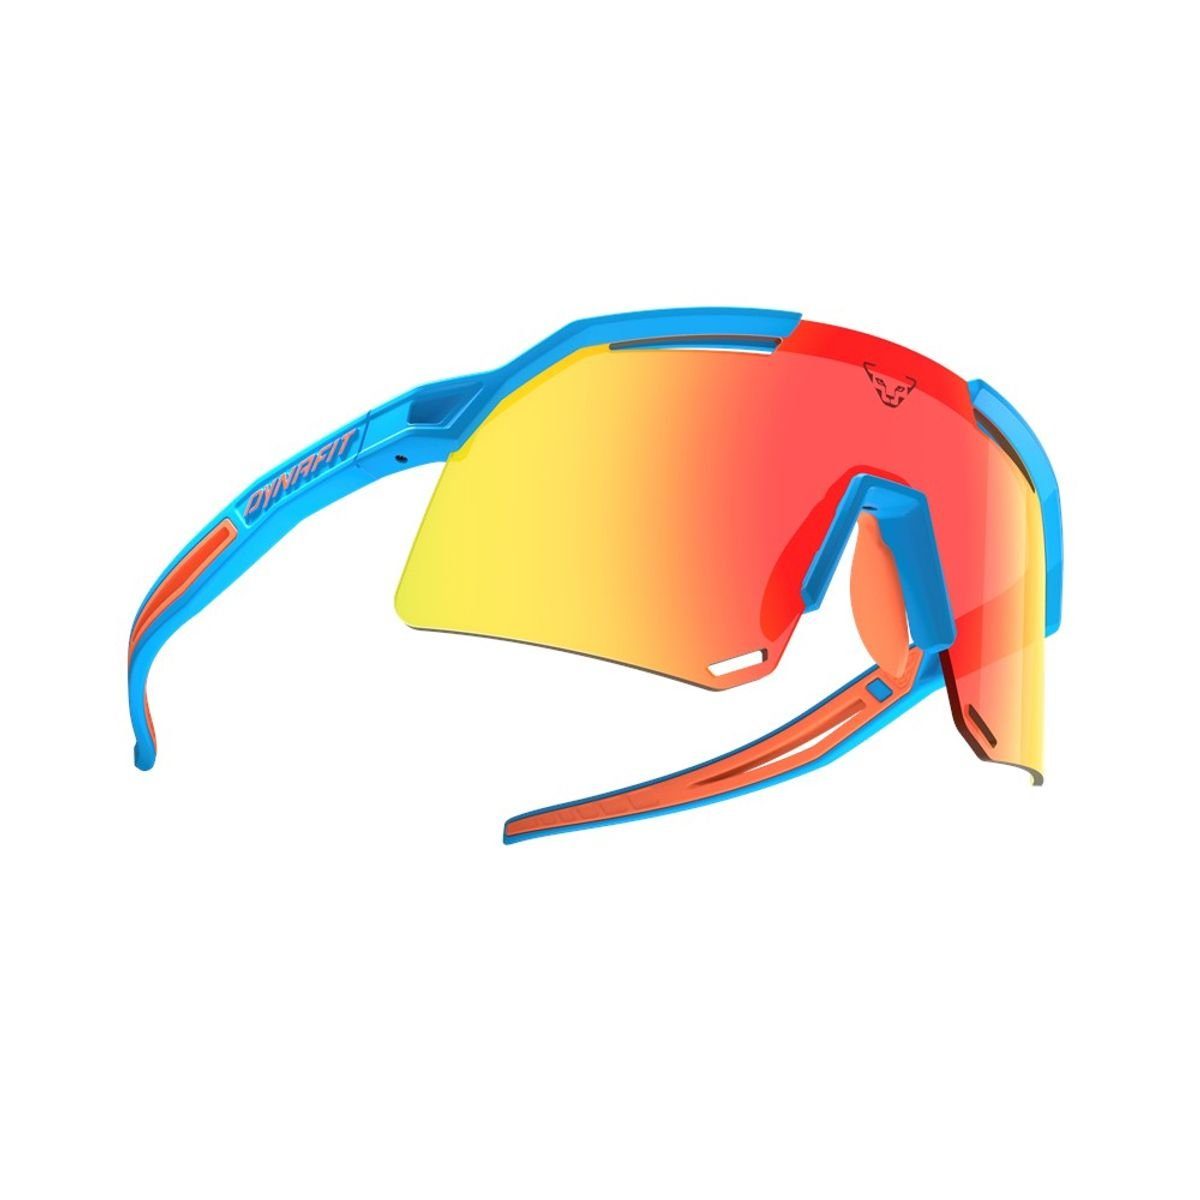 Dynafit Sportbrille Ultra Evo Sunglasses - Dynafit, 8880 Frost/Dawn Cat 3, 1 Uni